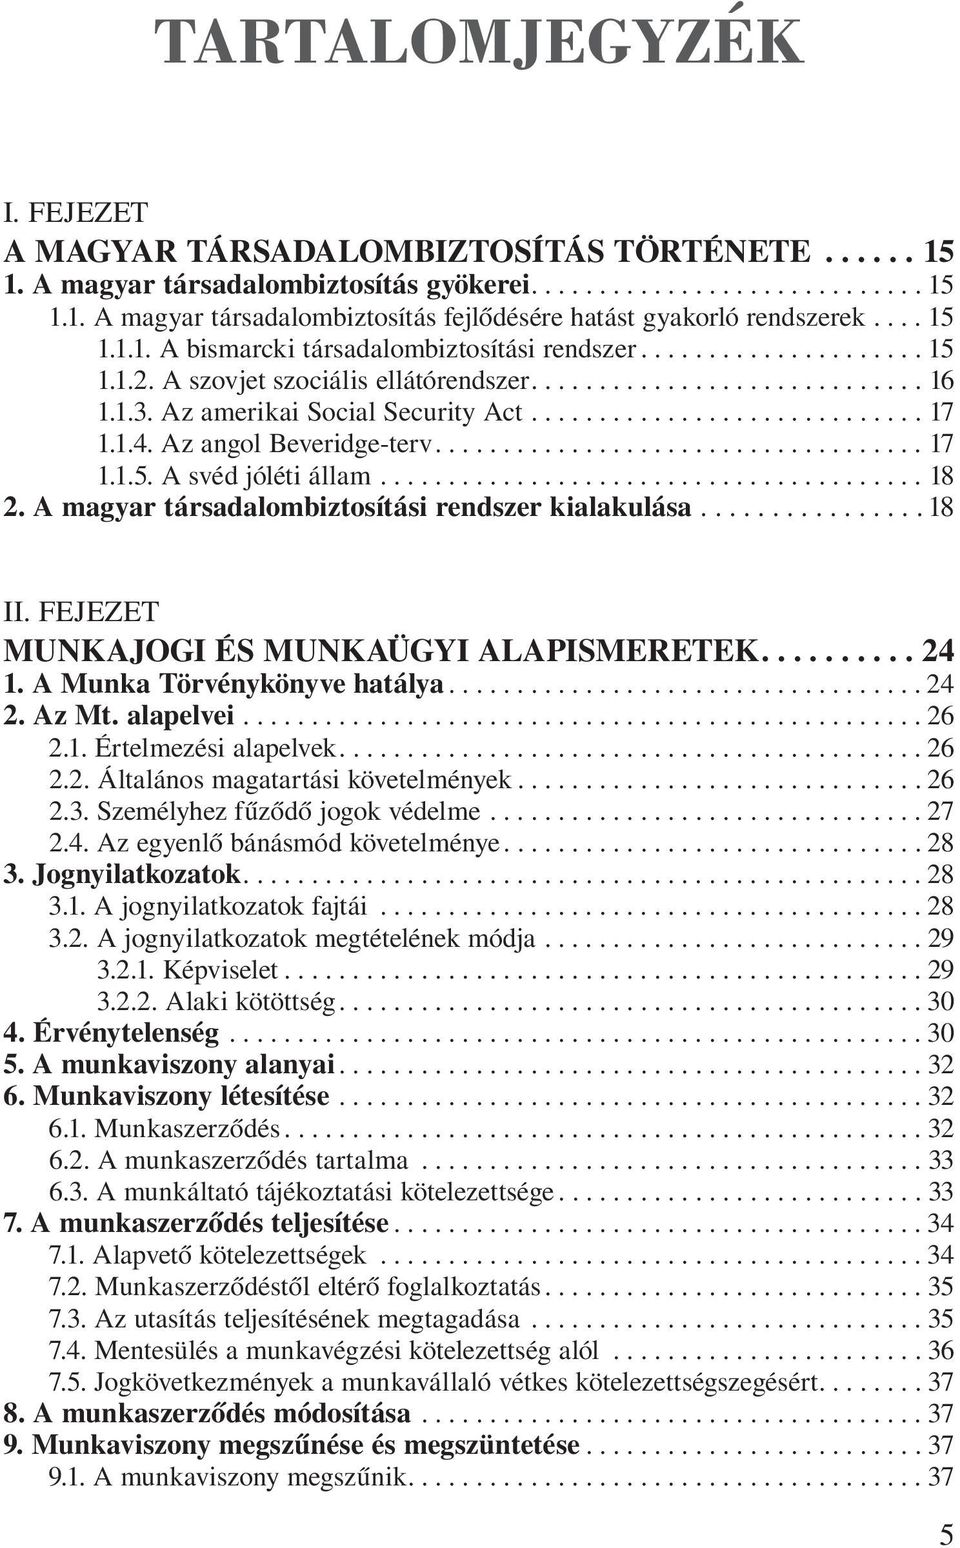 ..18 2. A magyar társadalombiztosítási rendszer kialakulása...18 II. Fejezet Munkajogi és munkaügyi alapismeretek....24 1. A Munka Törvénykönyve hatálya...24 2. Az Mt. alapelvei...26 2.1. Értelmezési alapelvek.